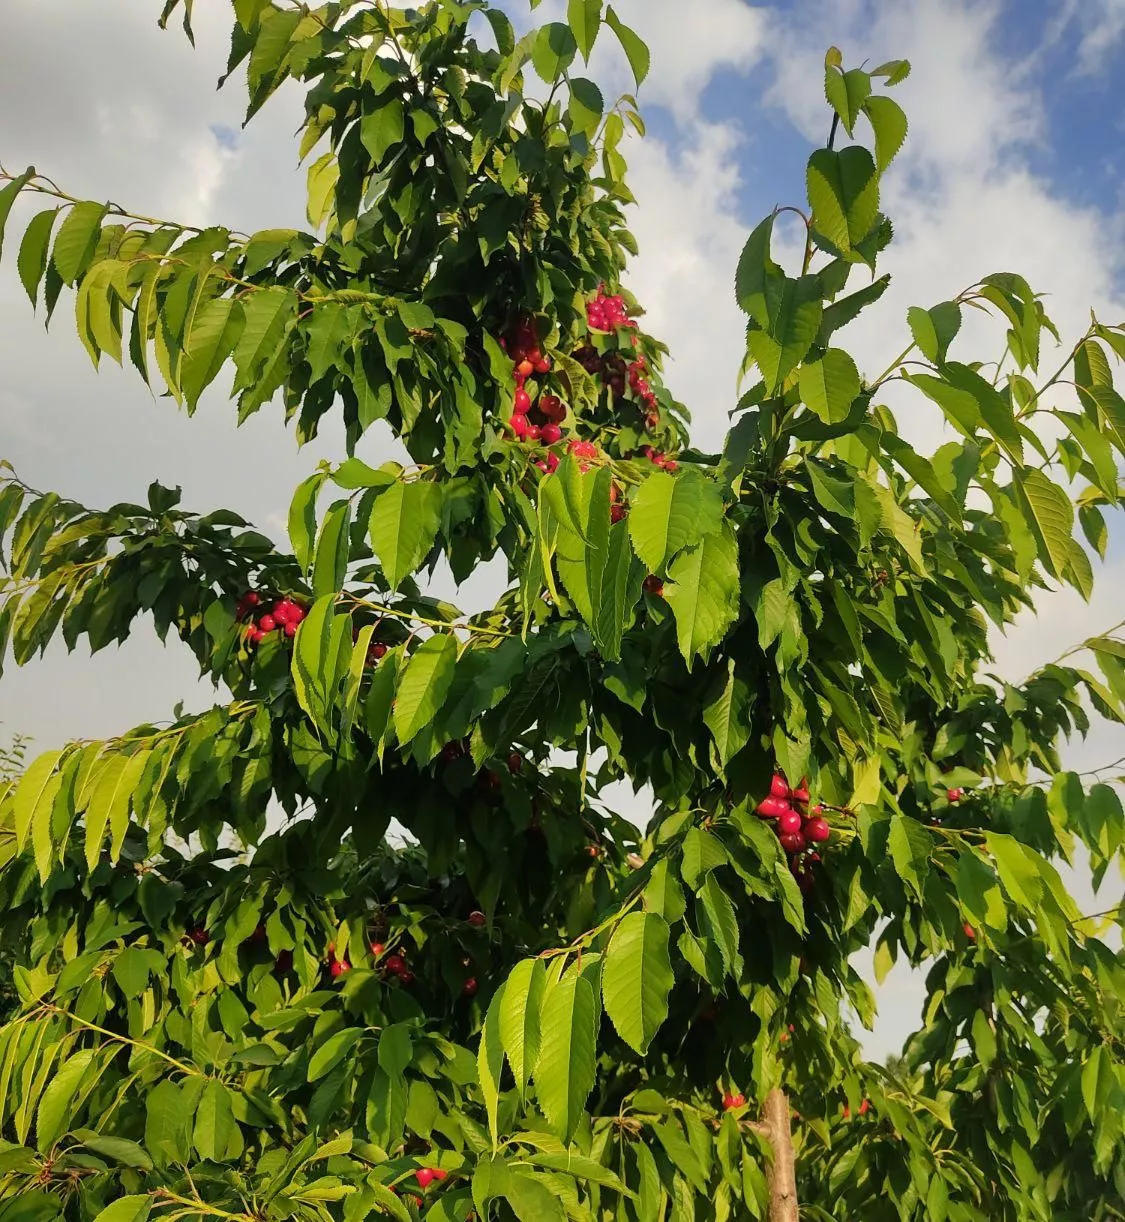 فروش باغات کشاورزی پل زمانخان با درخت میوه